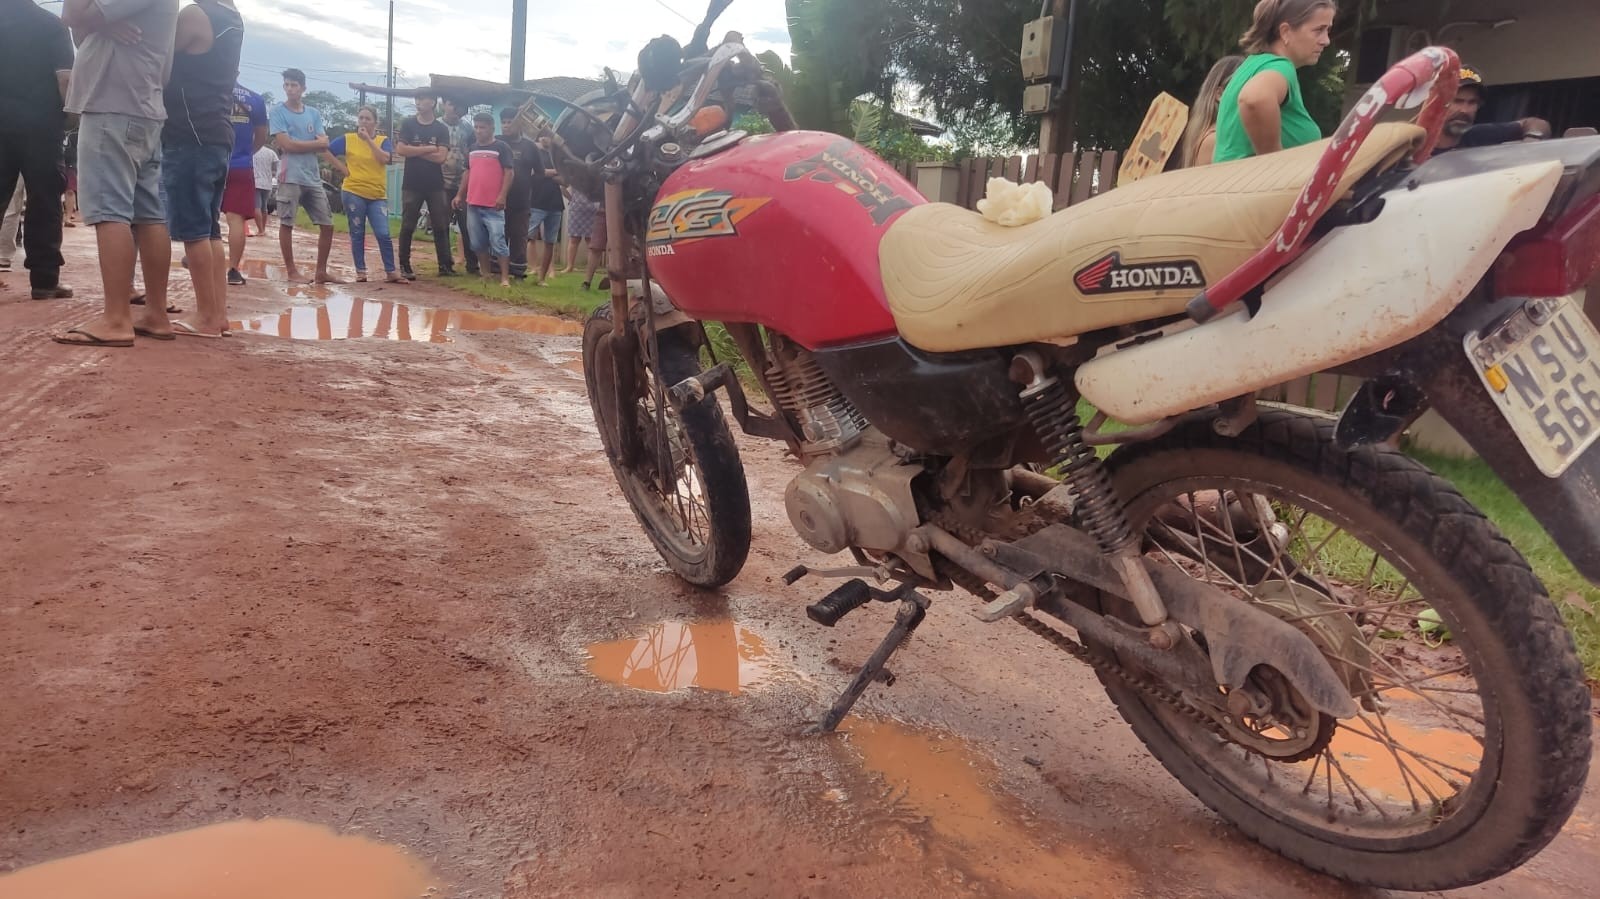 Motociclista morre em acidente ao tentar fugir de perseguição policial na região de planalto em Santarém